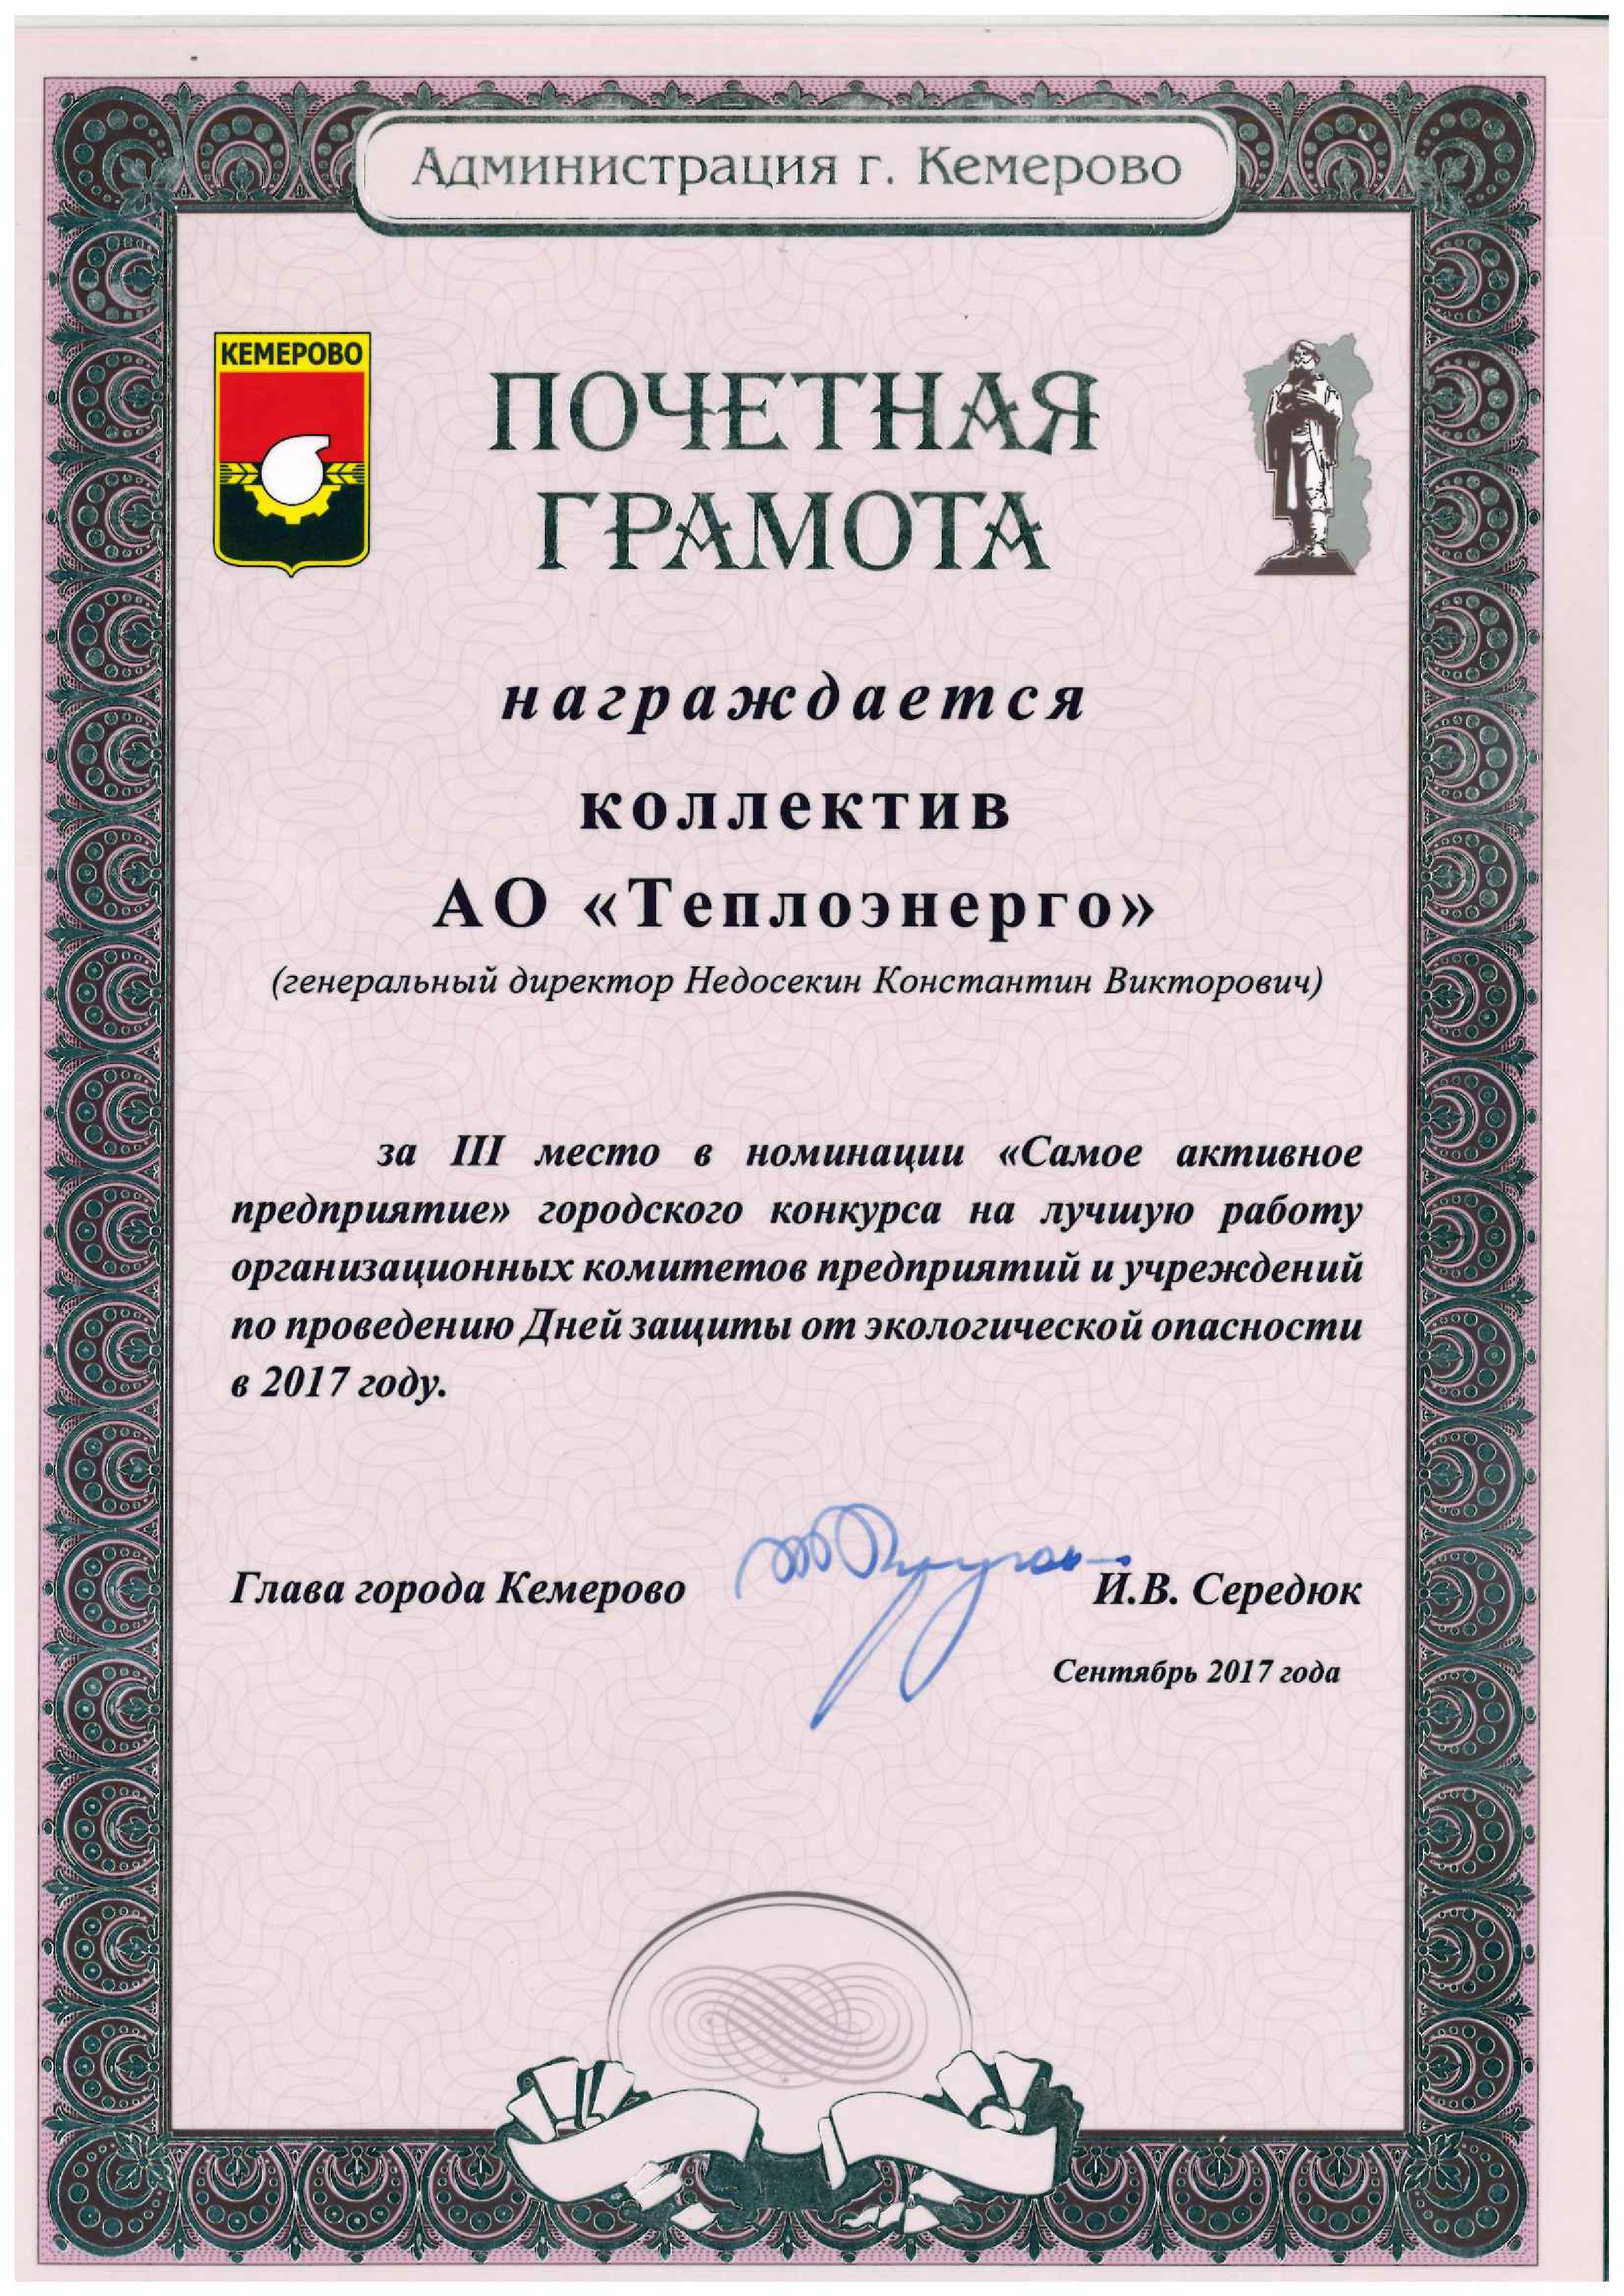 Почетная грамота от главы города Кемерово, 2017